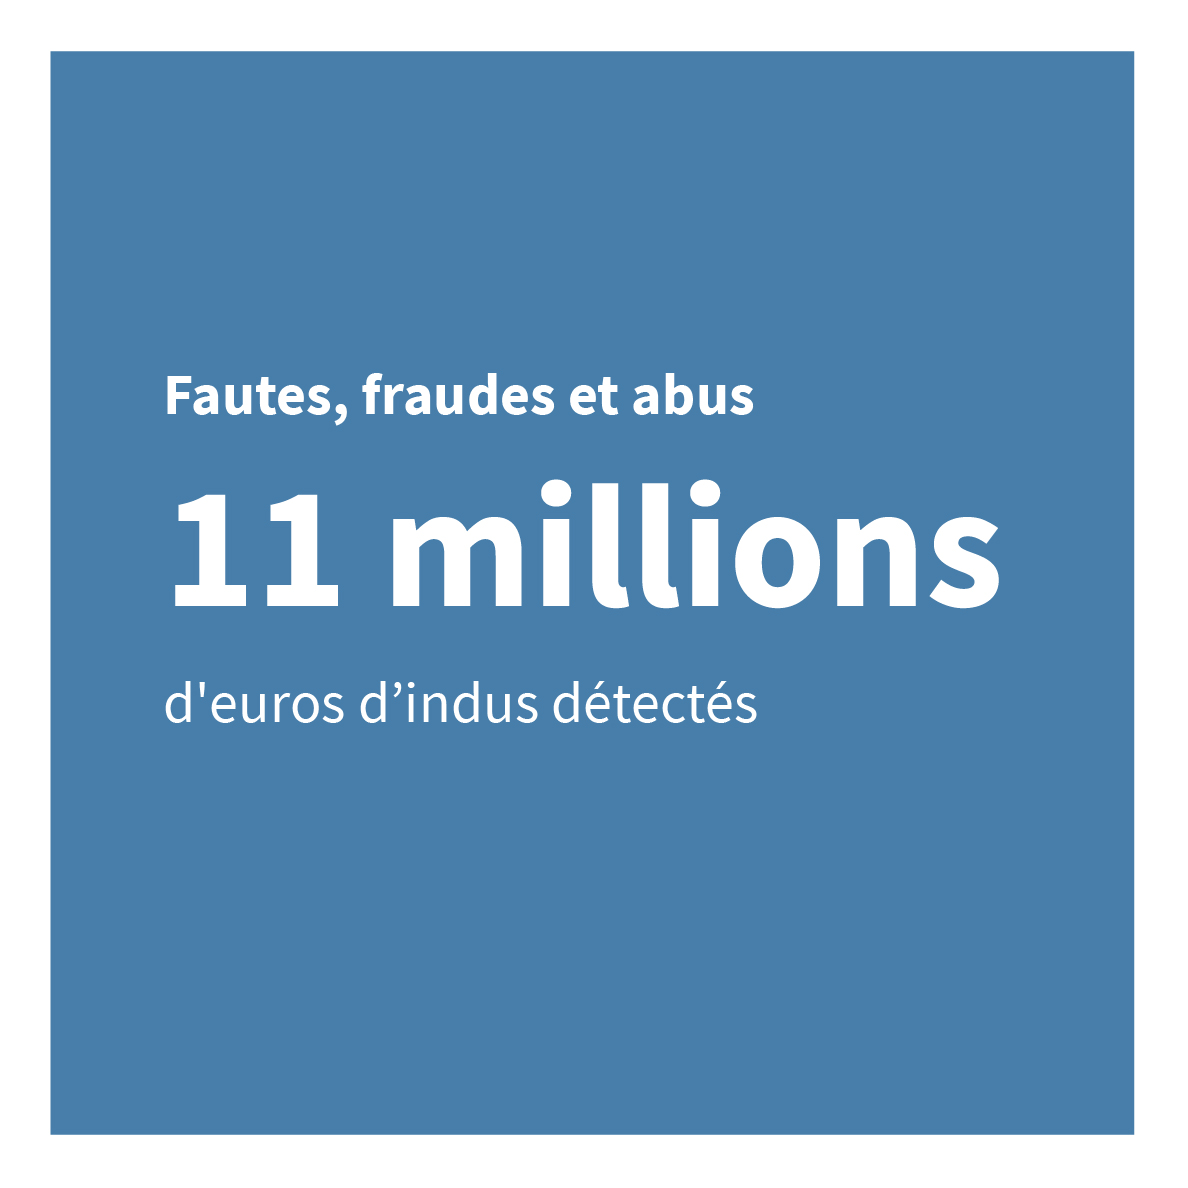 Fautes, fraudes et abus 11 millions d’euros d’indus détectés